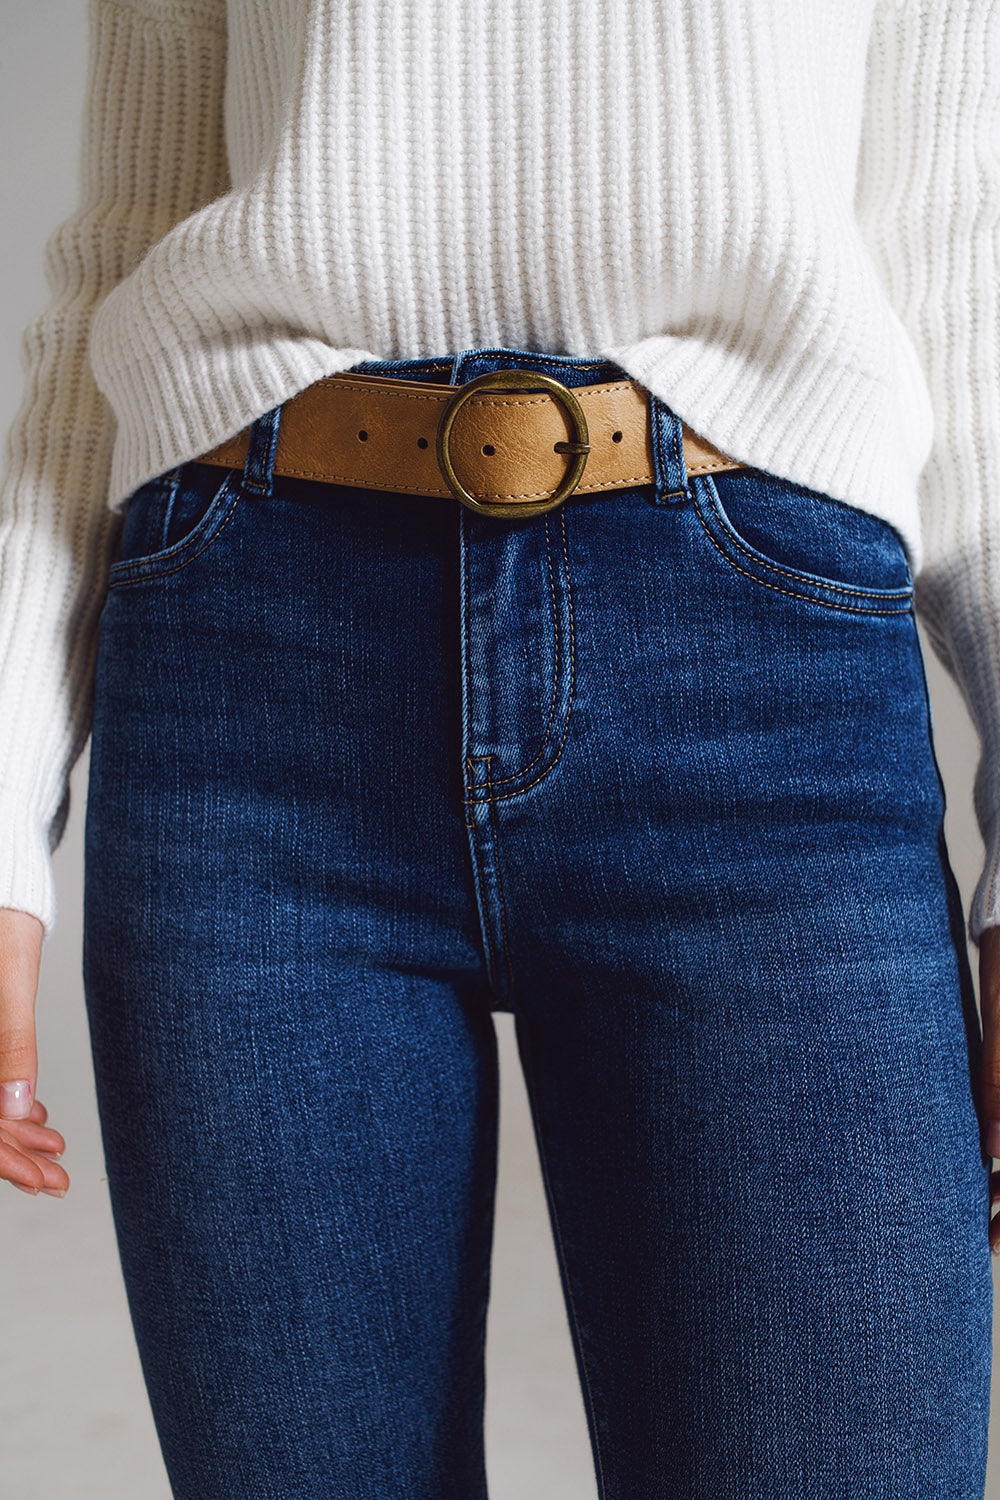 jeans a zampa con bordo decorato